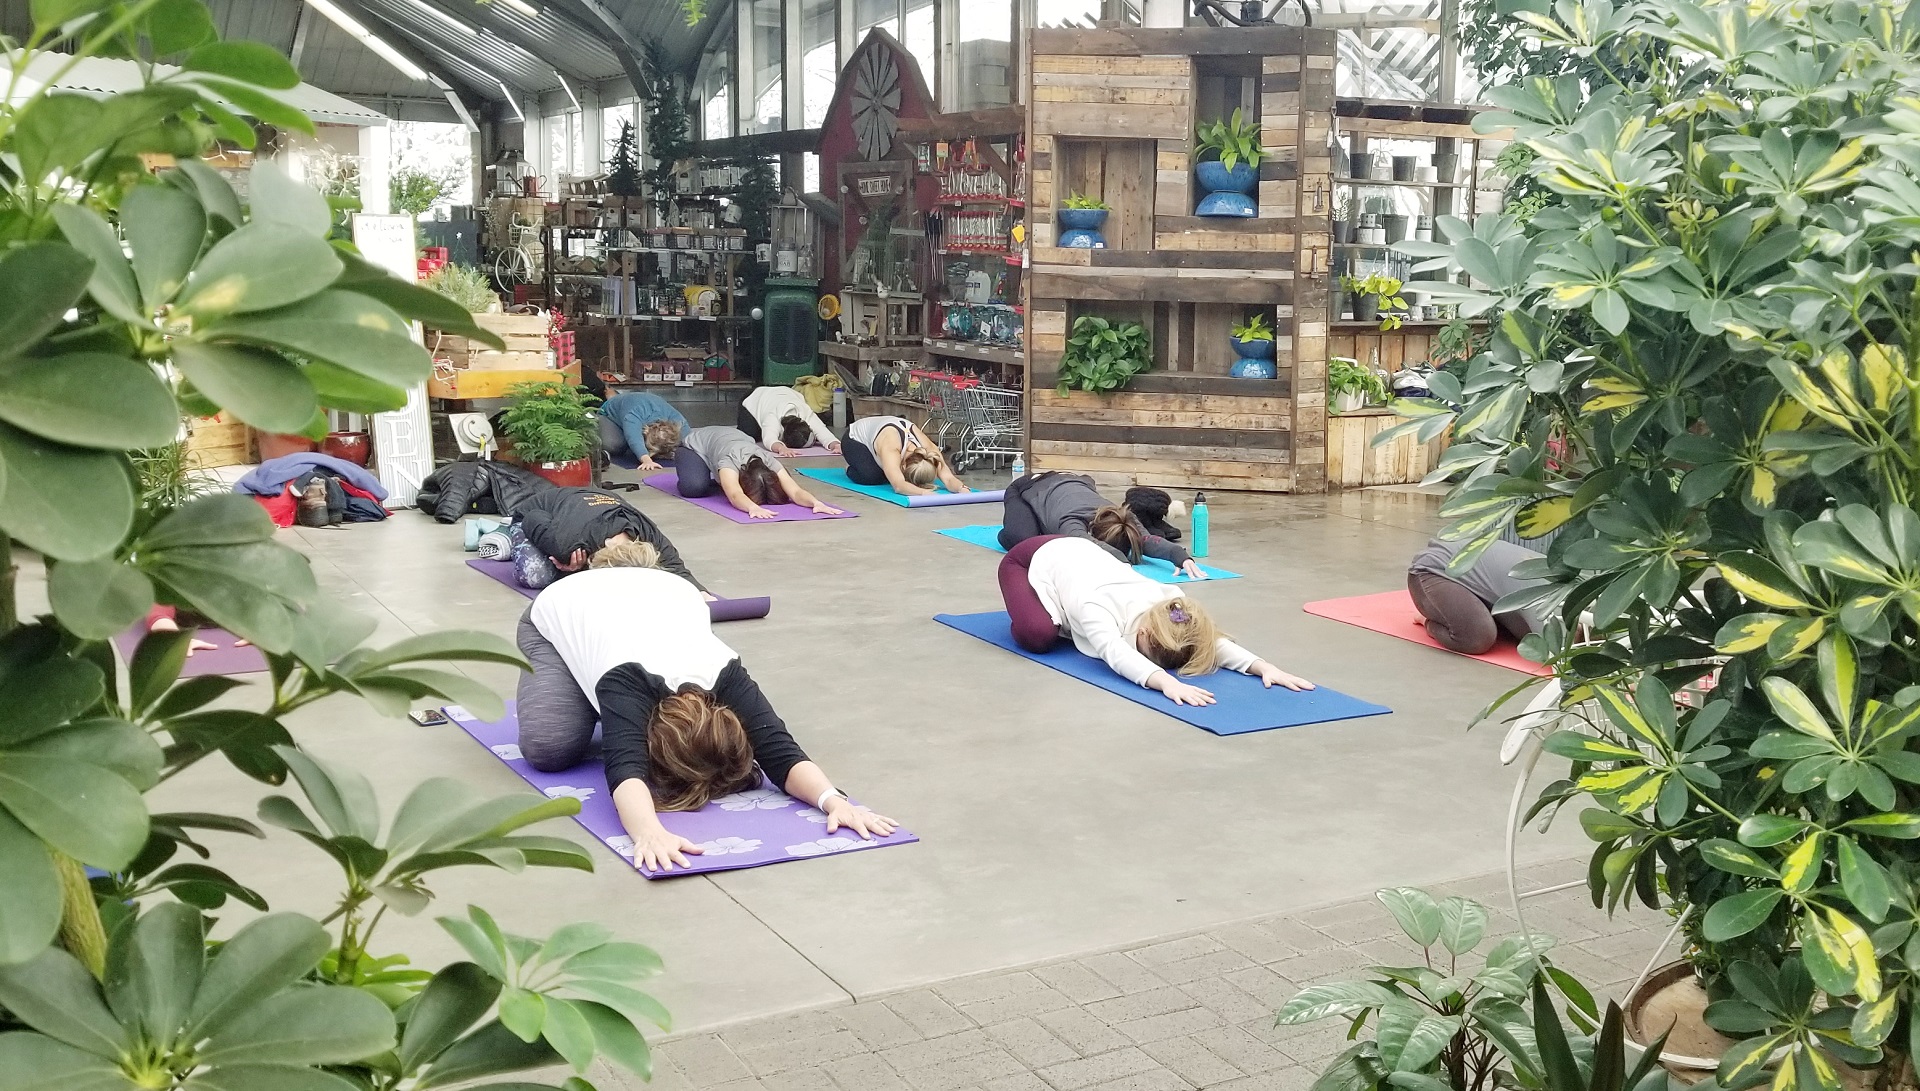 People practicing yoga at Warner's Nursery